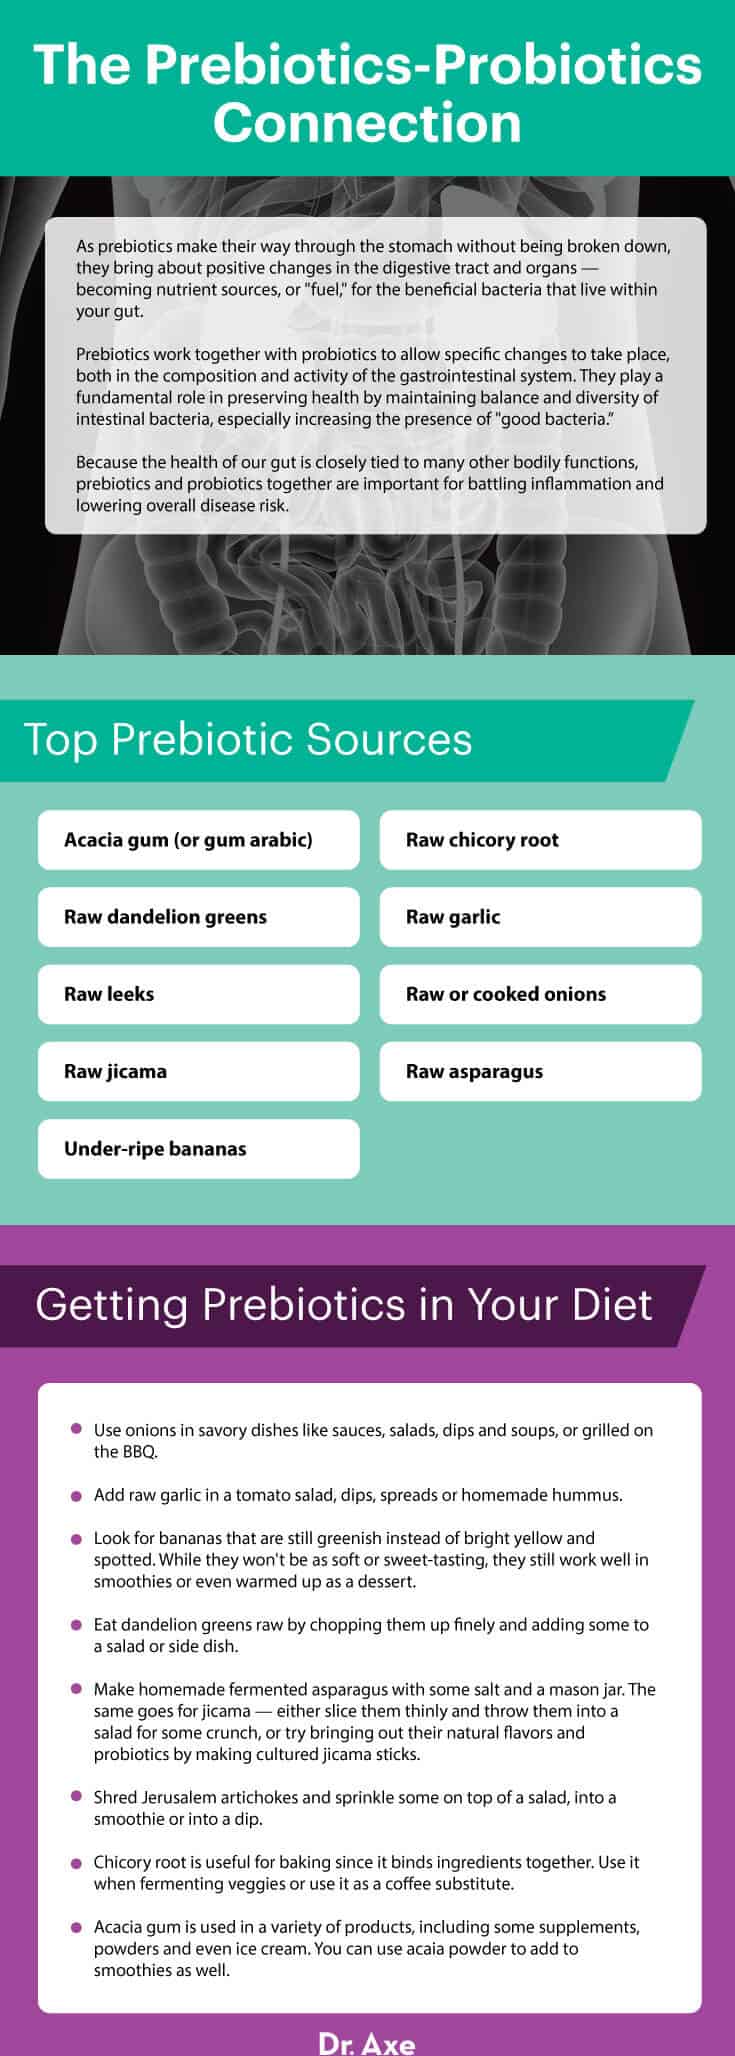 Prebiotics-probiotics connection - Dr. Axe